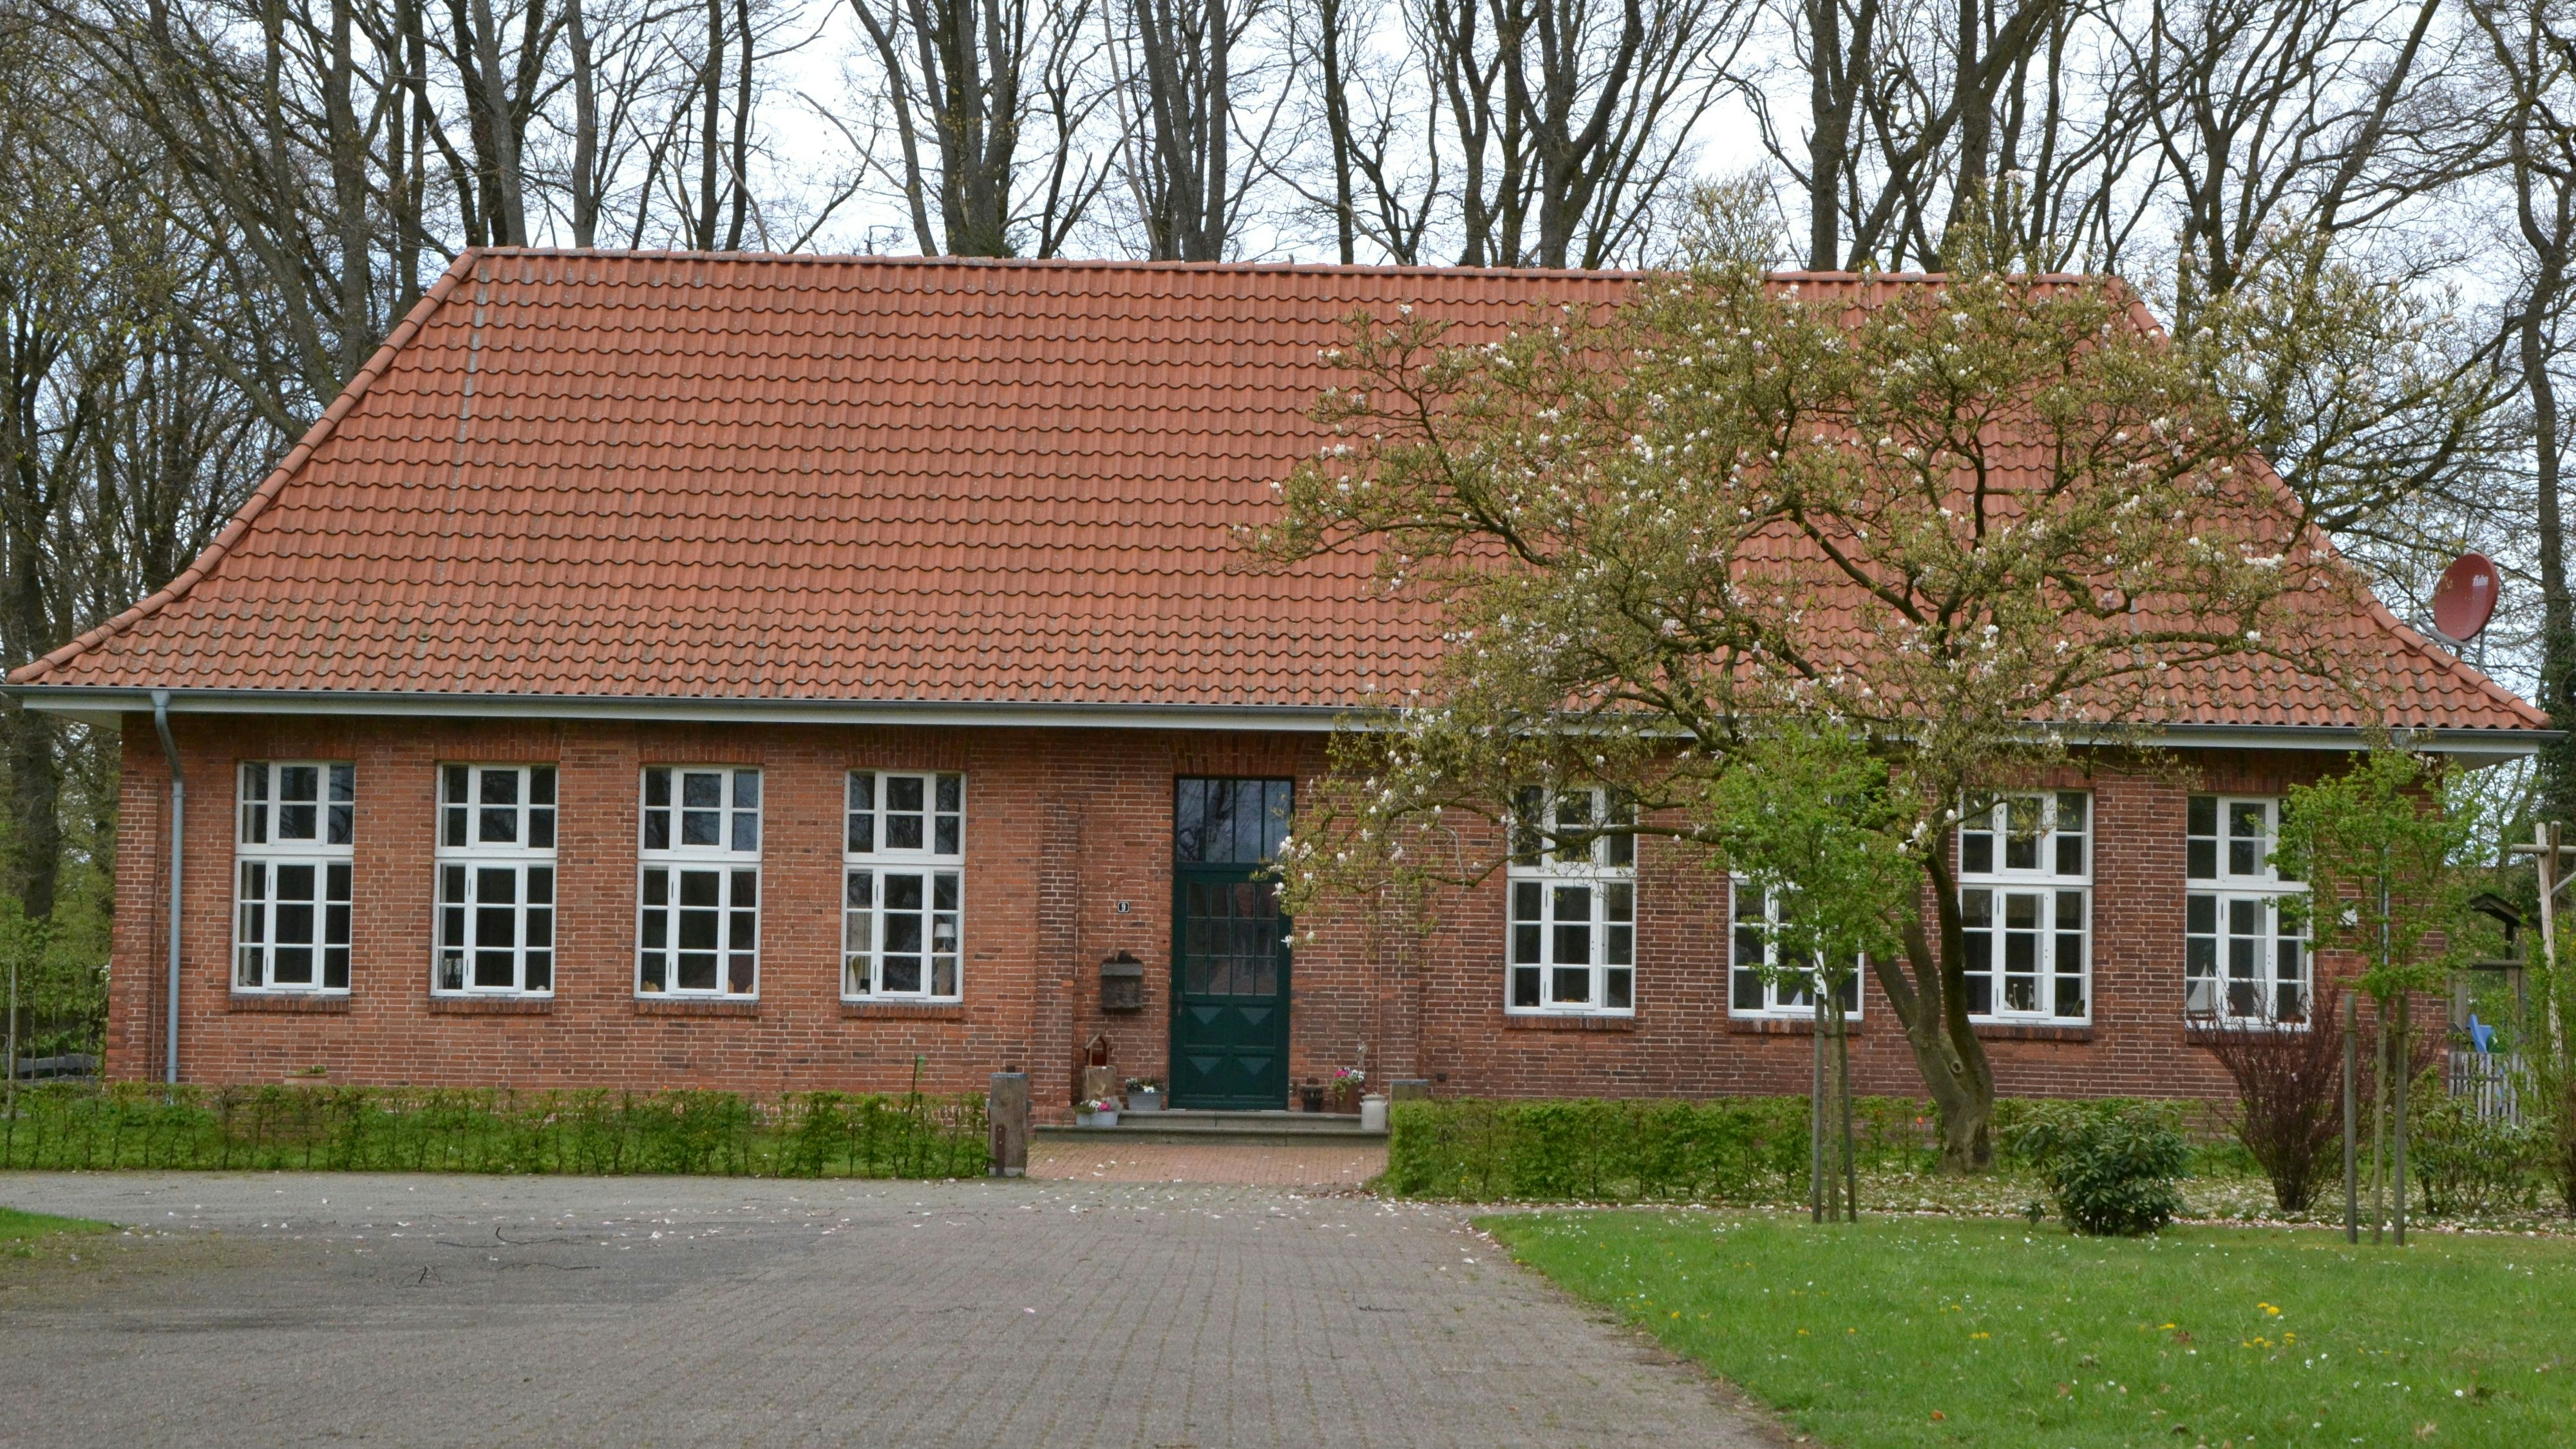 Wohnen in der Alten Dorfschule: Das Gebäude befindet sich in privater Hand und wurde liebevoll renoviert. Foto: G. Meyer